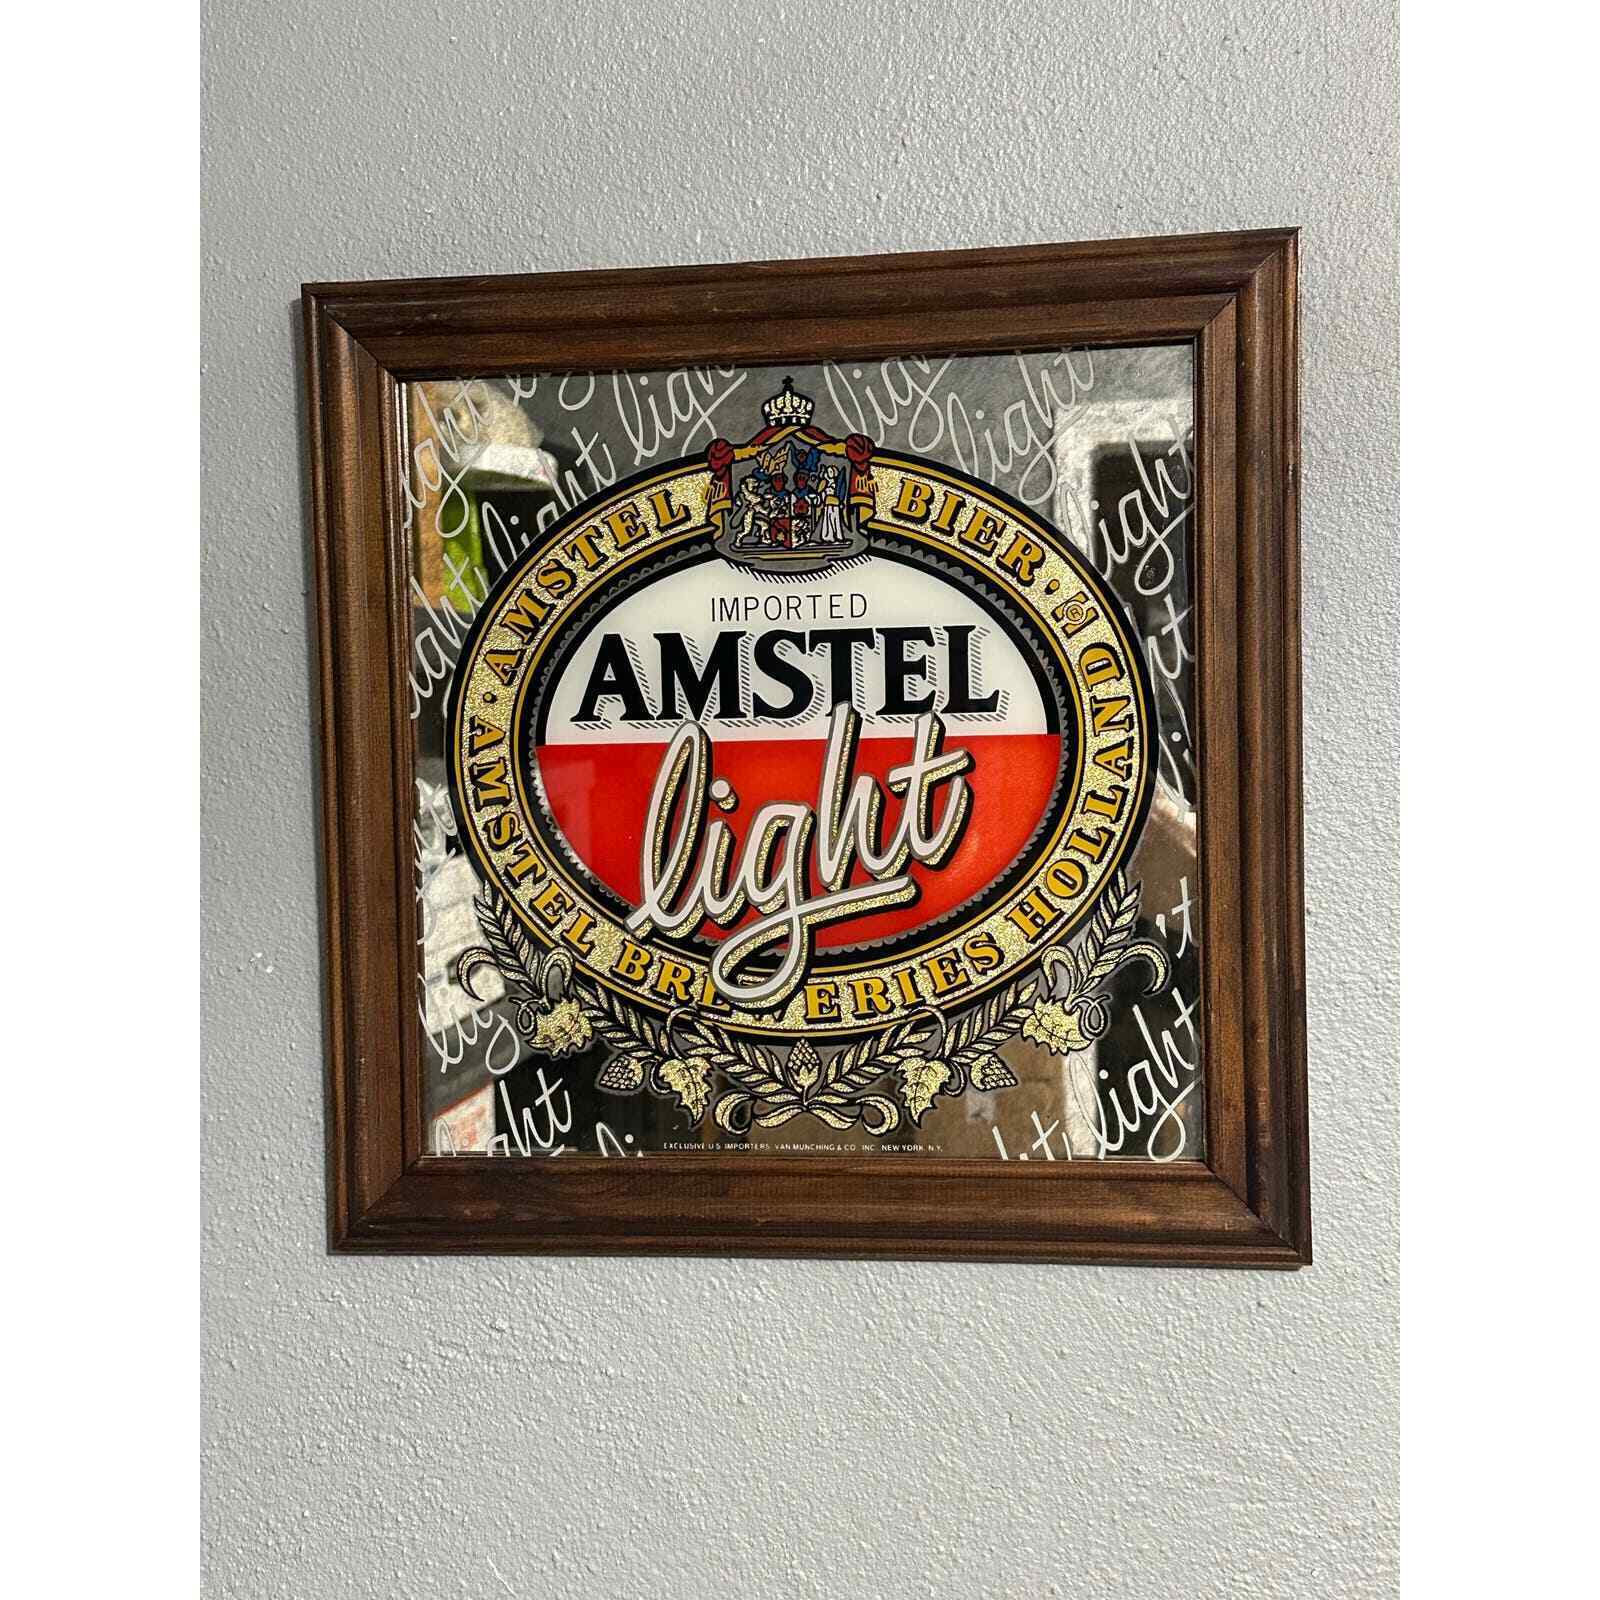 Imported Amstel Light Mirror Sign, Square Wood frame, Vintage